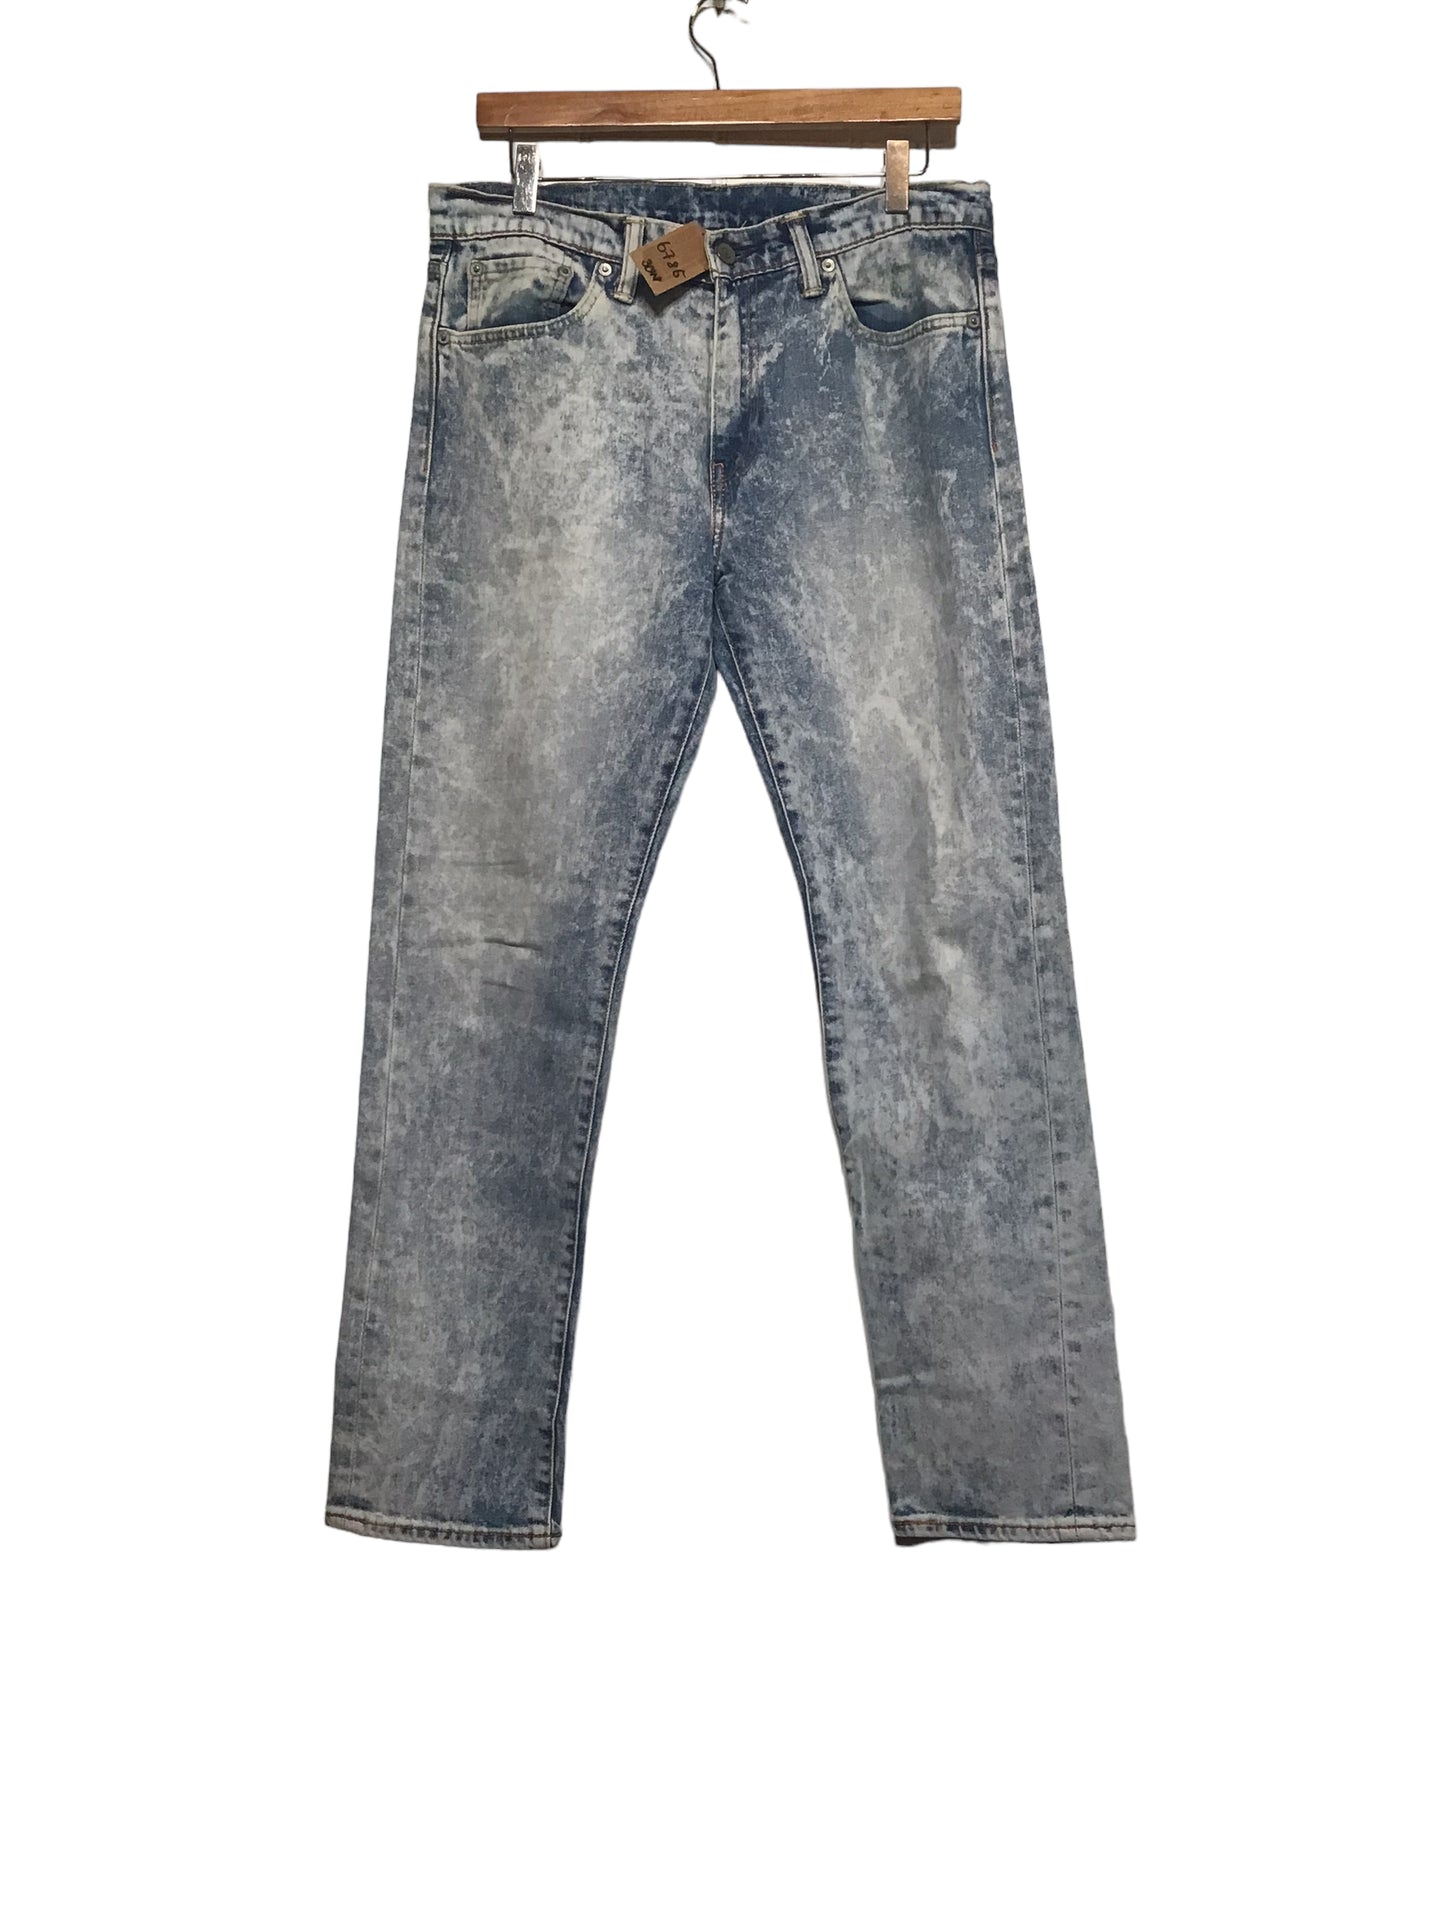 Levi 508 Jeans (30x30)